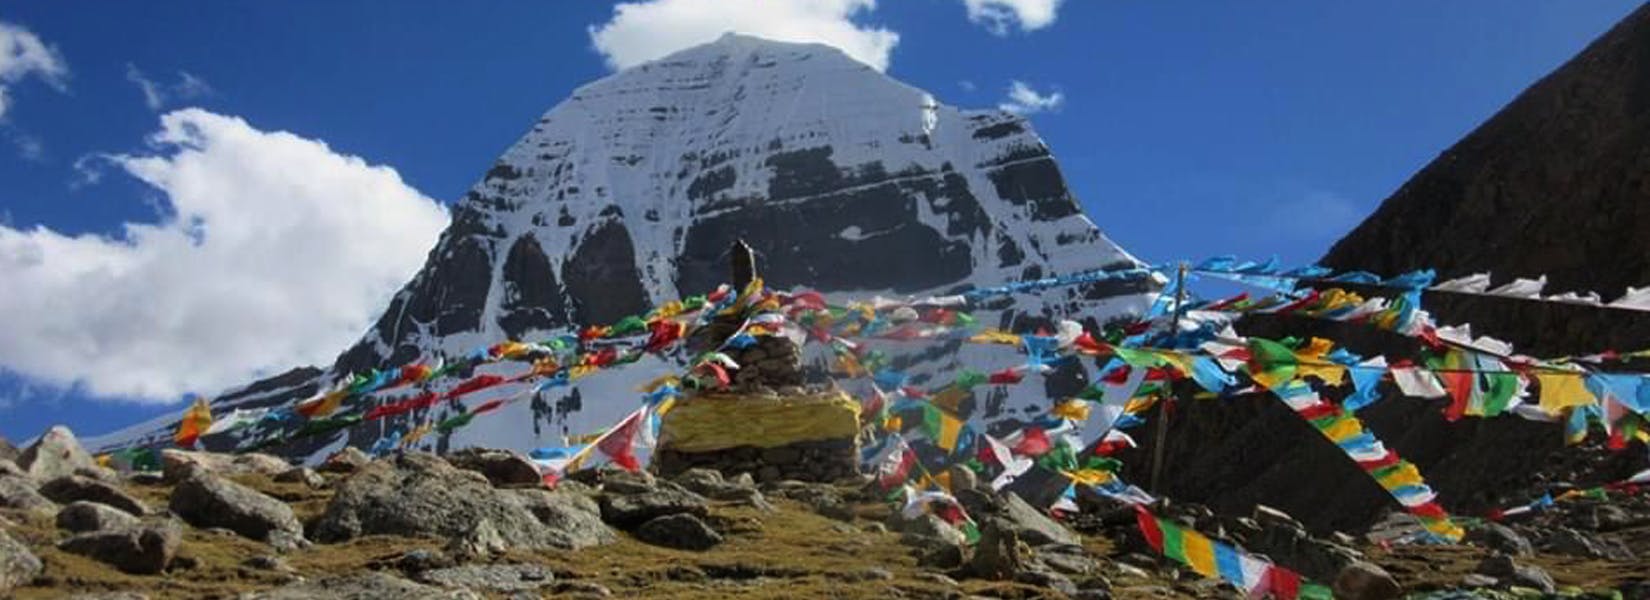 Lhasa to Mount Kailash Tibet Budget Tour - <span class="font-light">15 days</span>